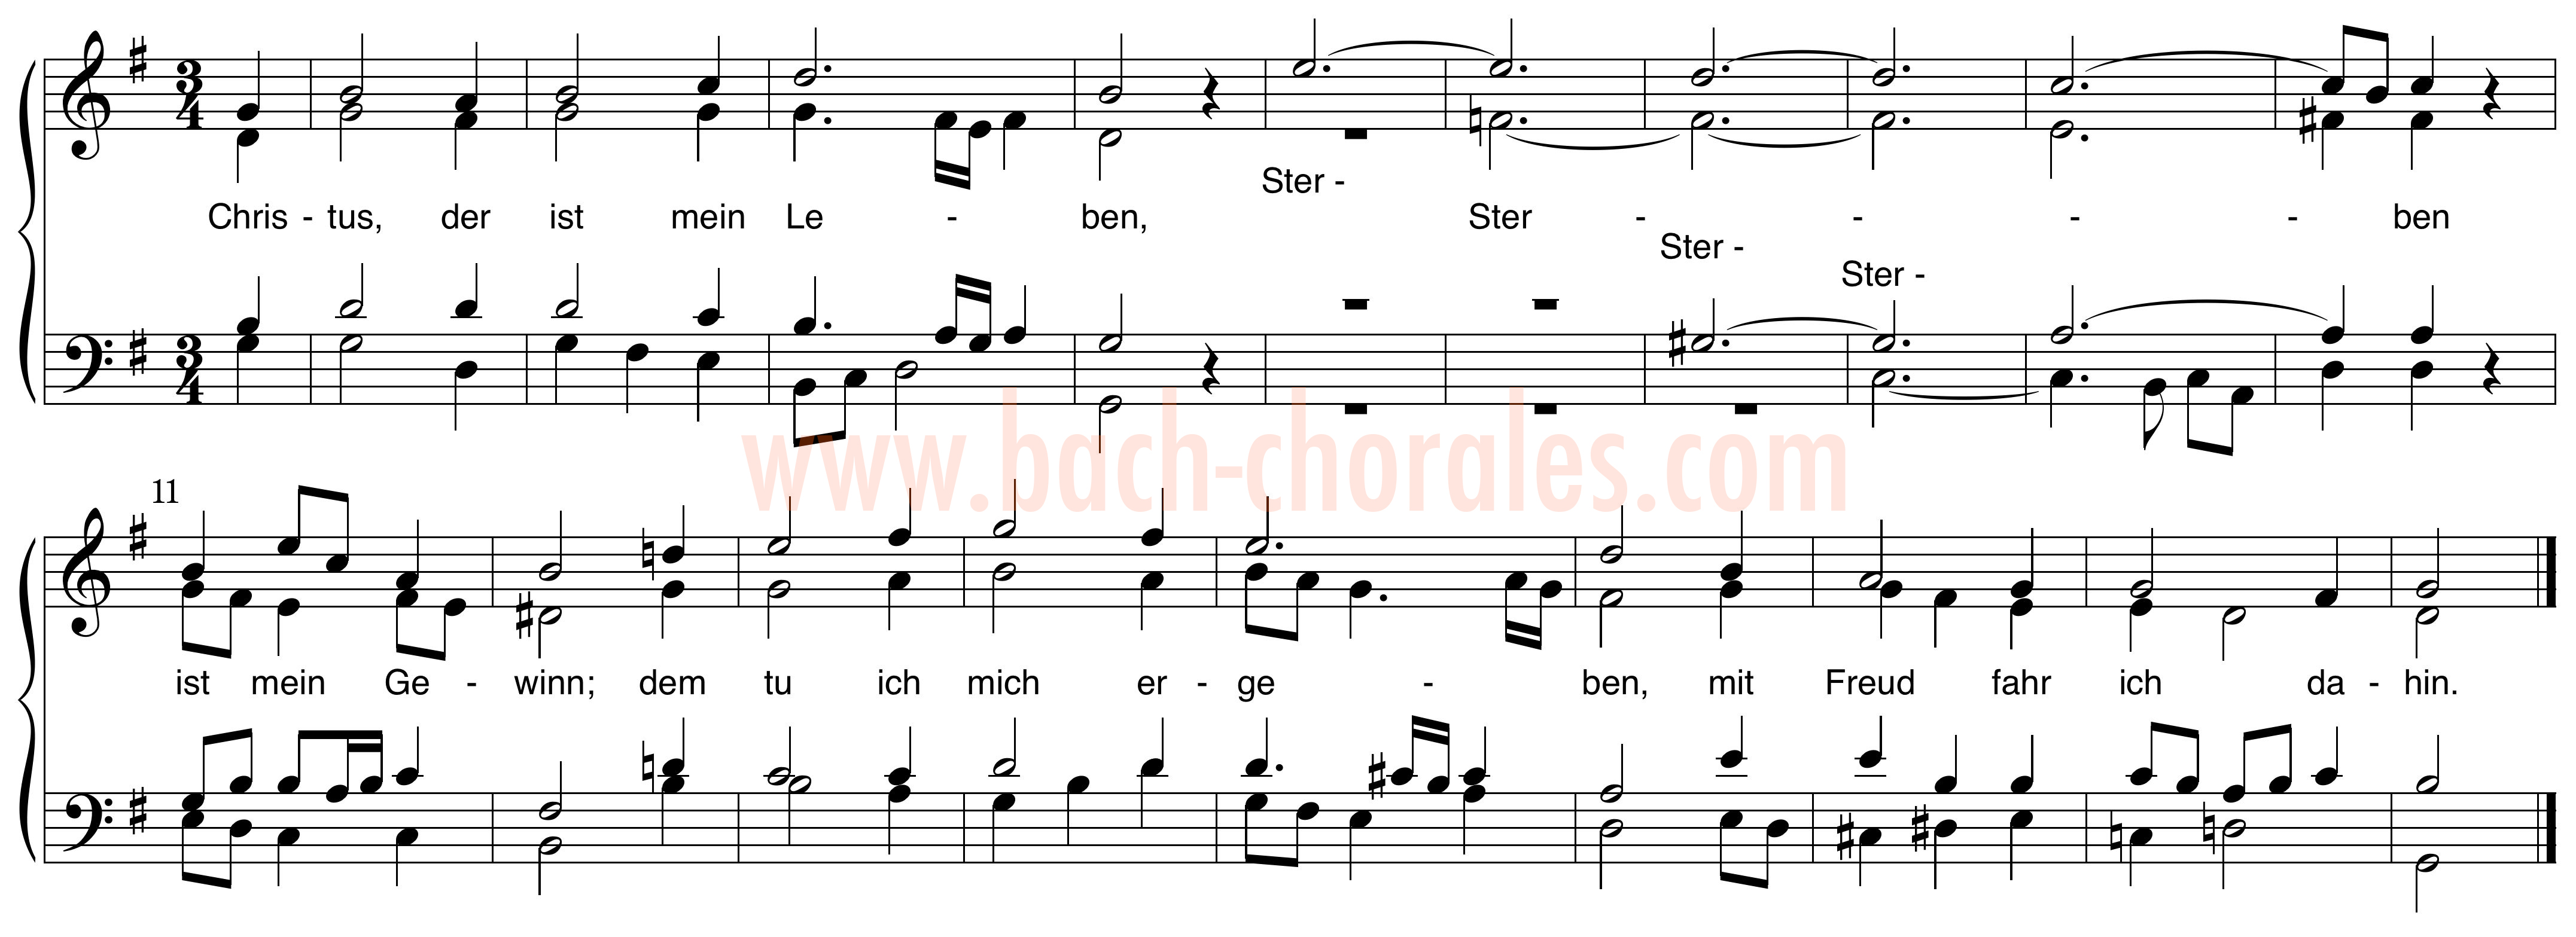 notenbeeld BWV 282 op https://www.bach-chorales.com/